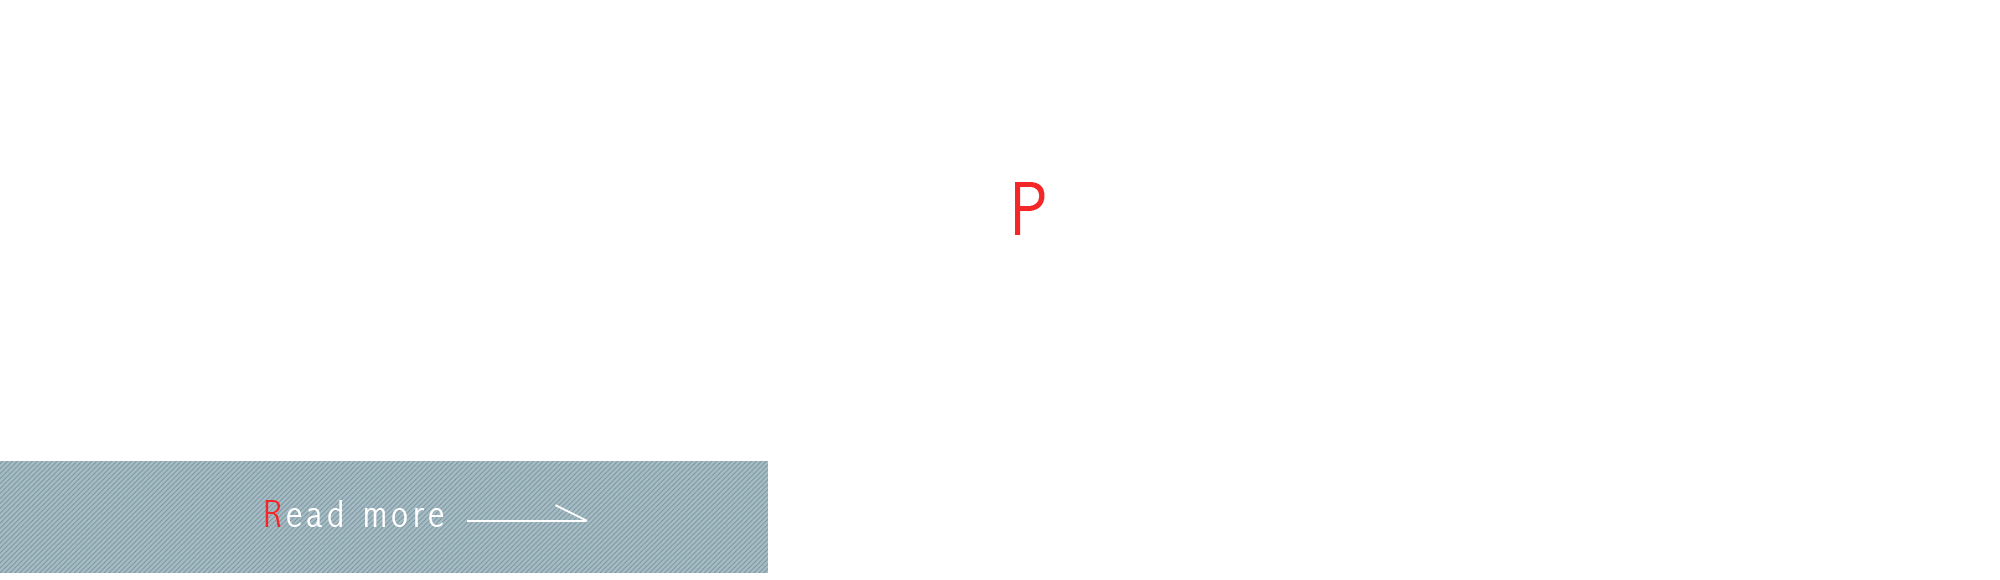 partner_banner